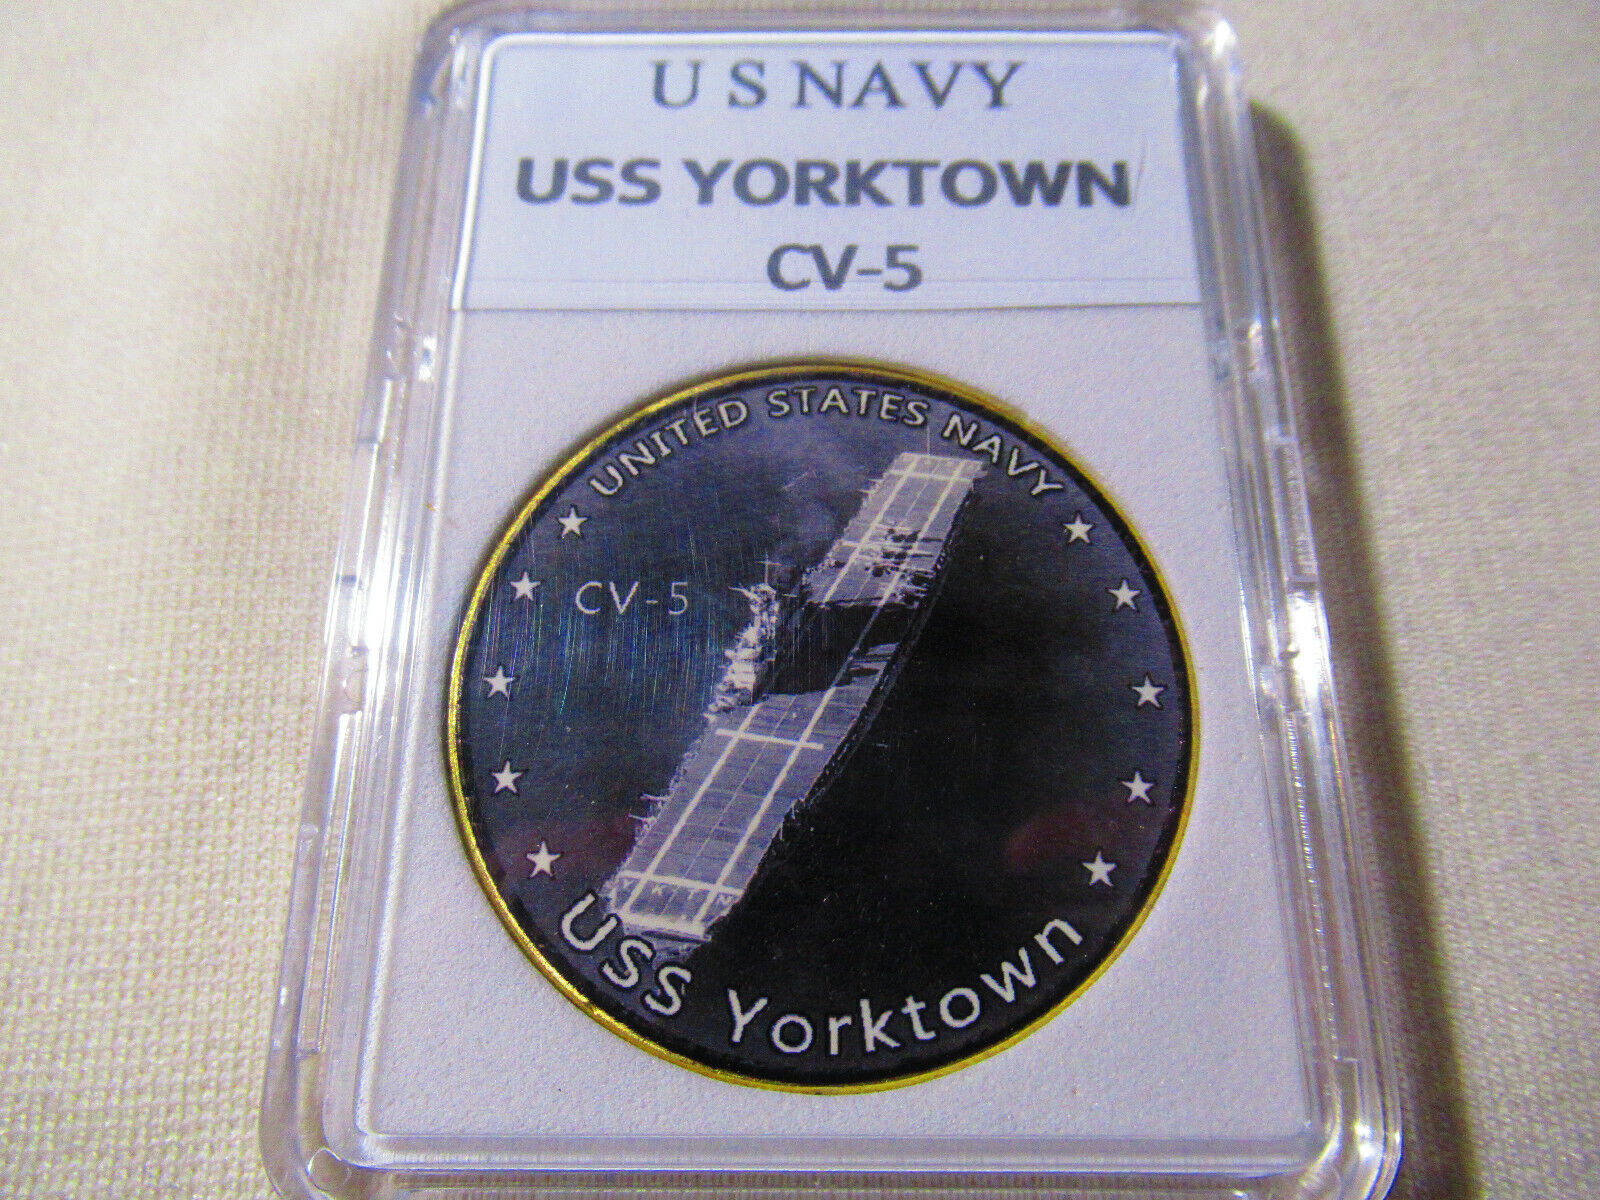 US NAVY - USS YORKTOWN CV-5 Challenge Coin 